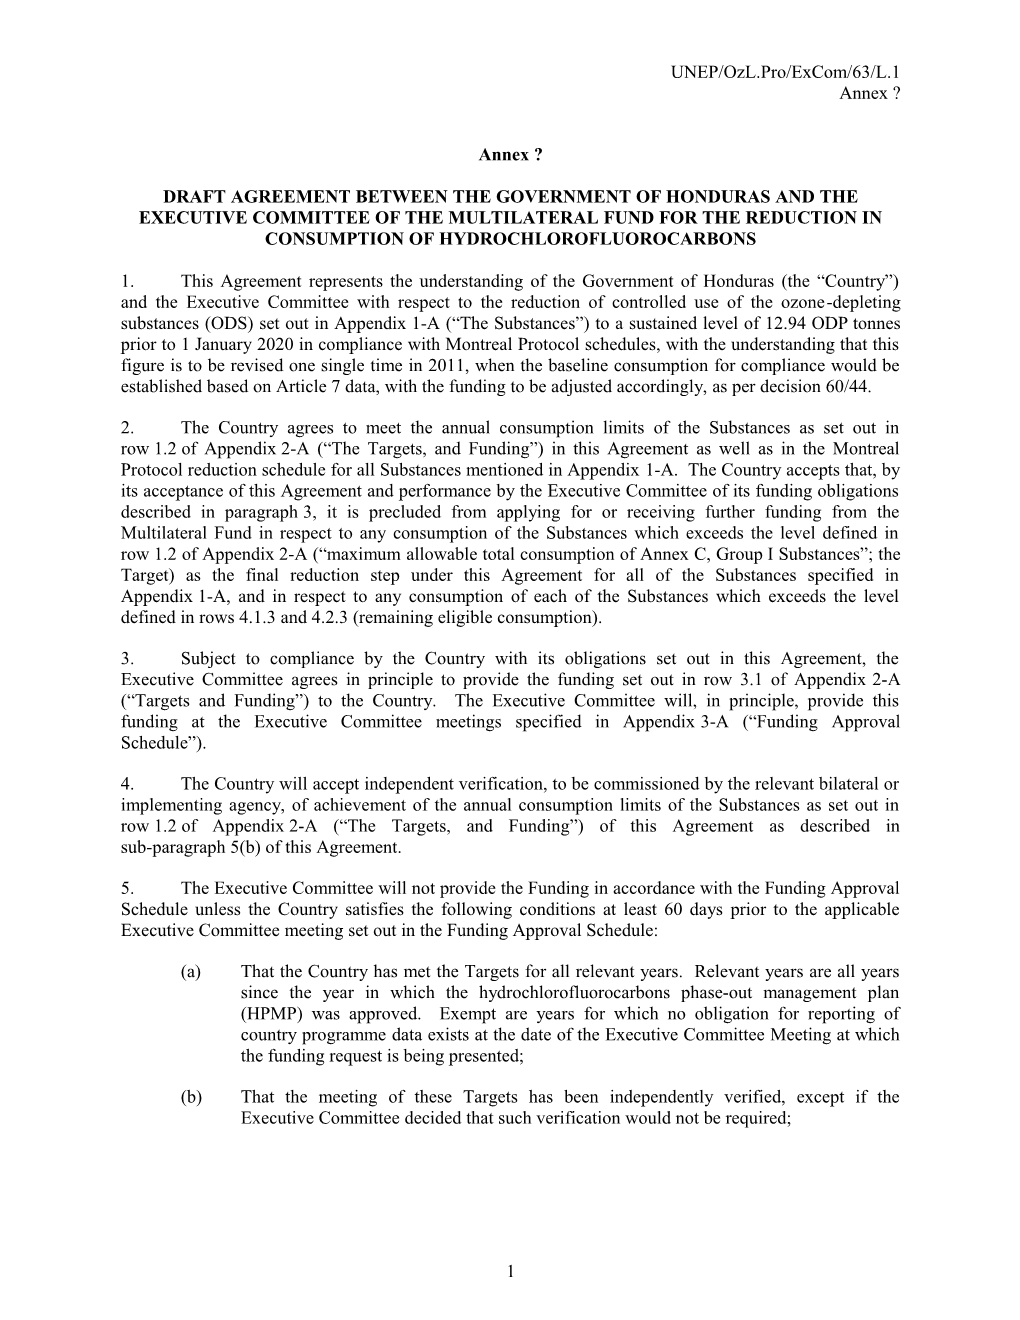 Annex Honduras Agreement